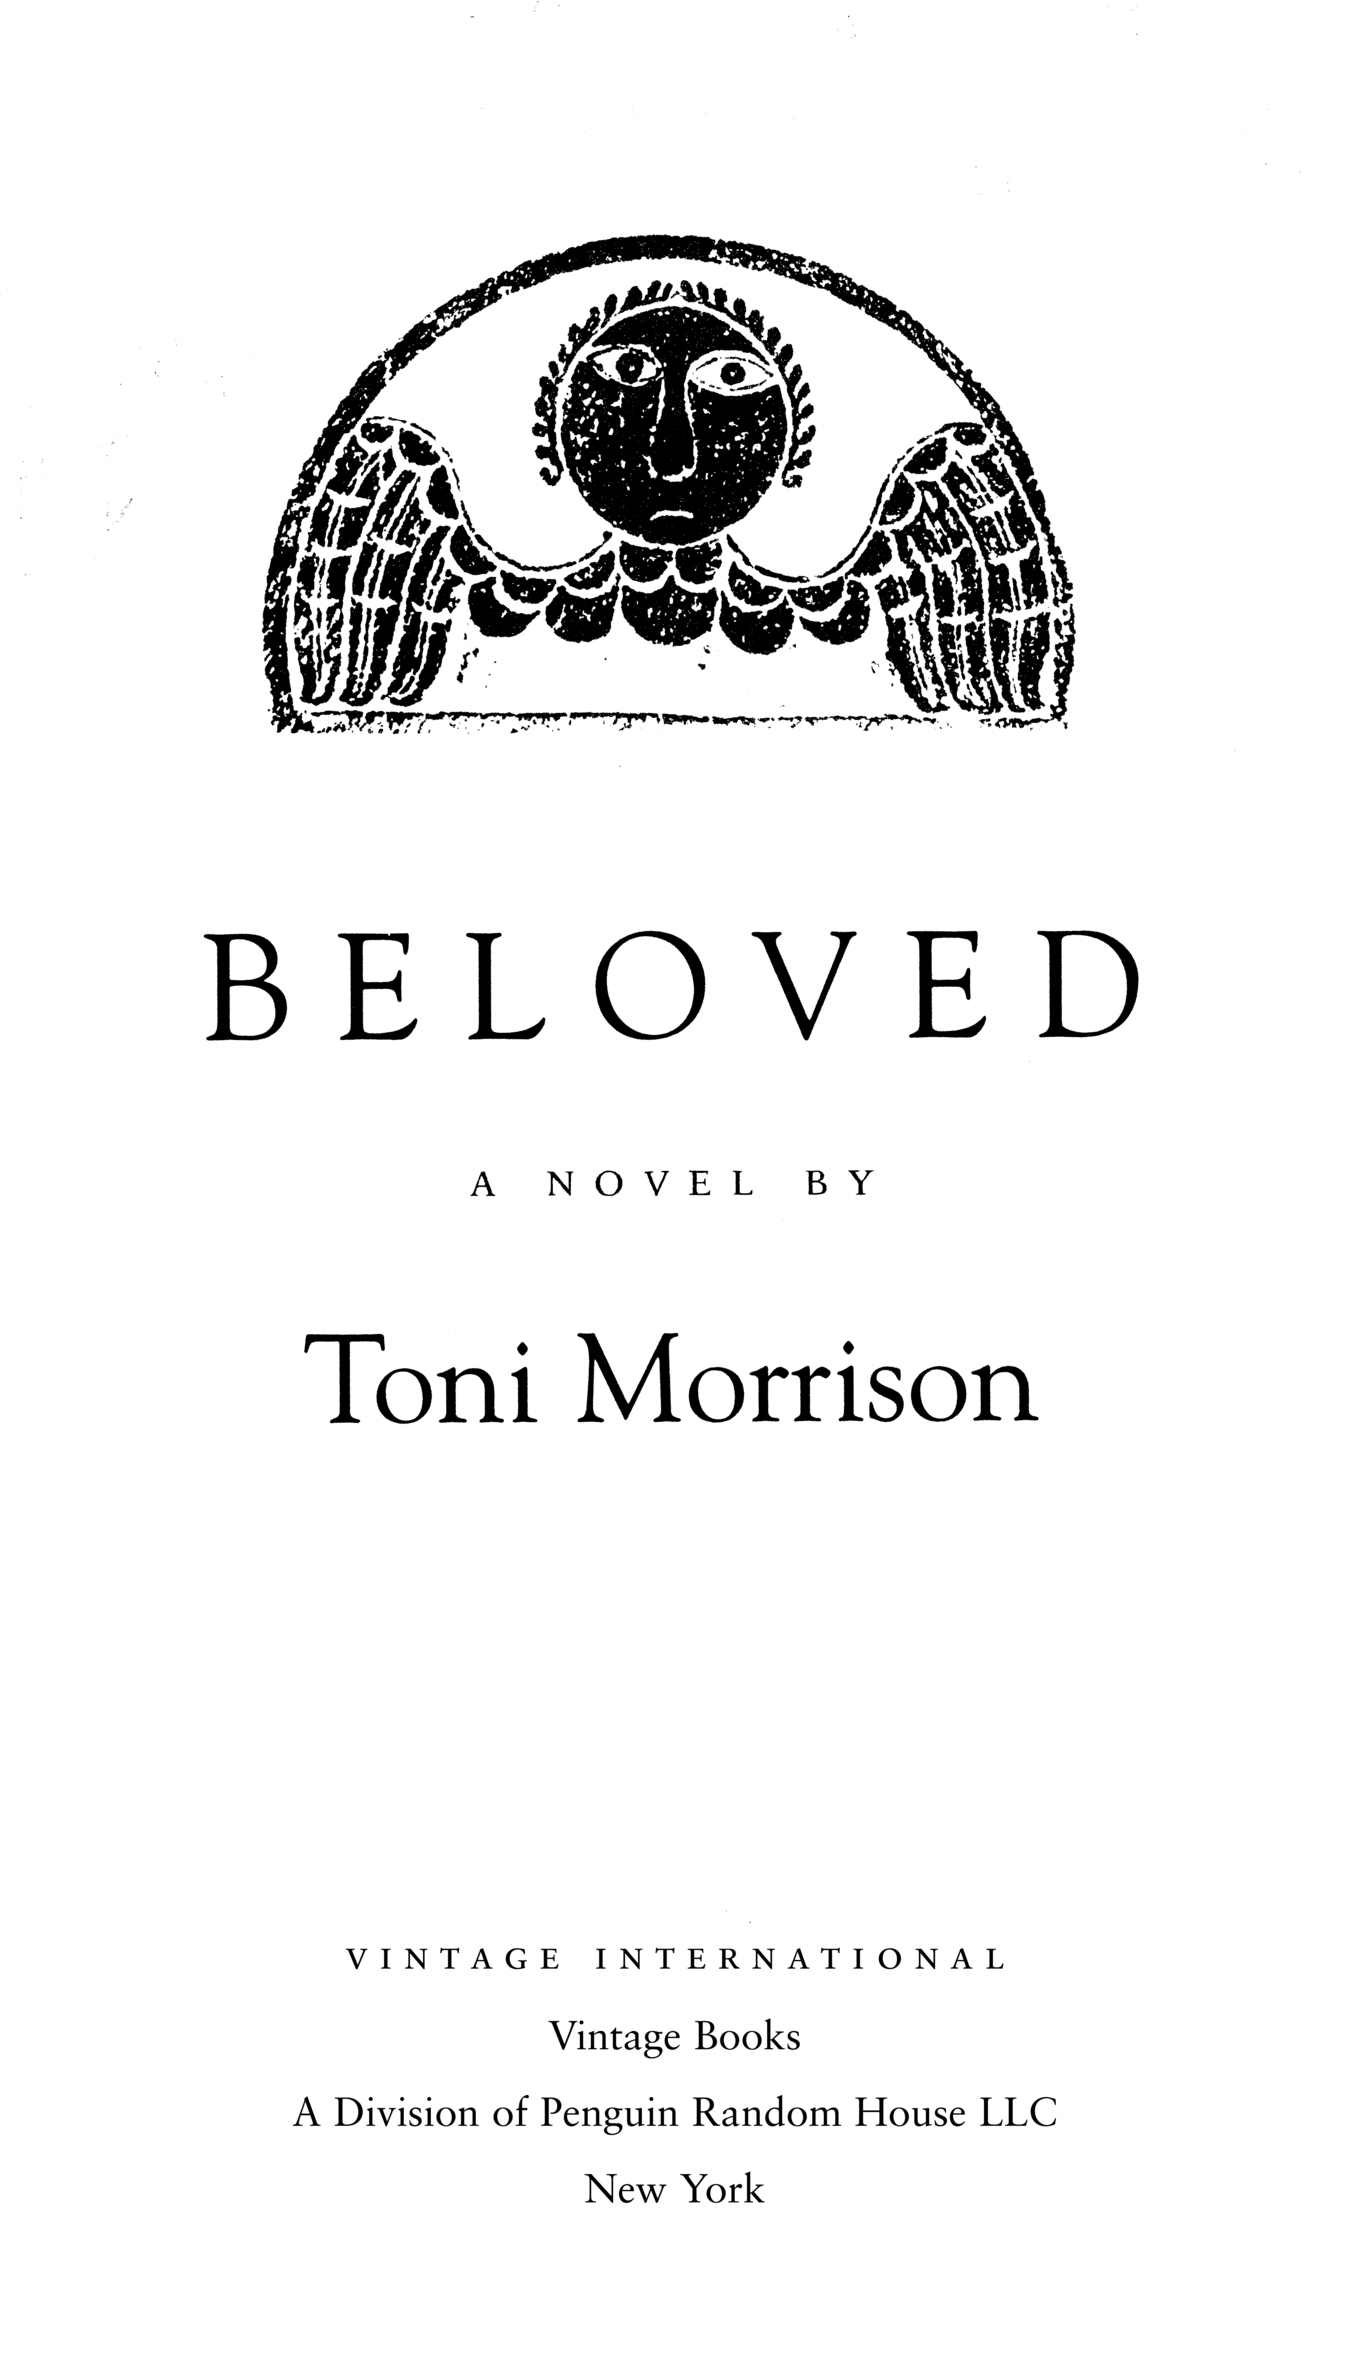 Book Title, Beloved, Subtitle, A Novel by, Author, Toni Morrison, Imprint, Vintage International